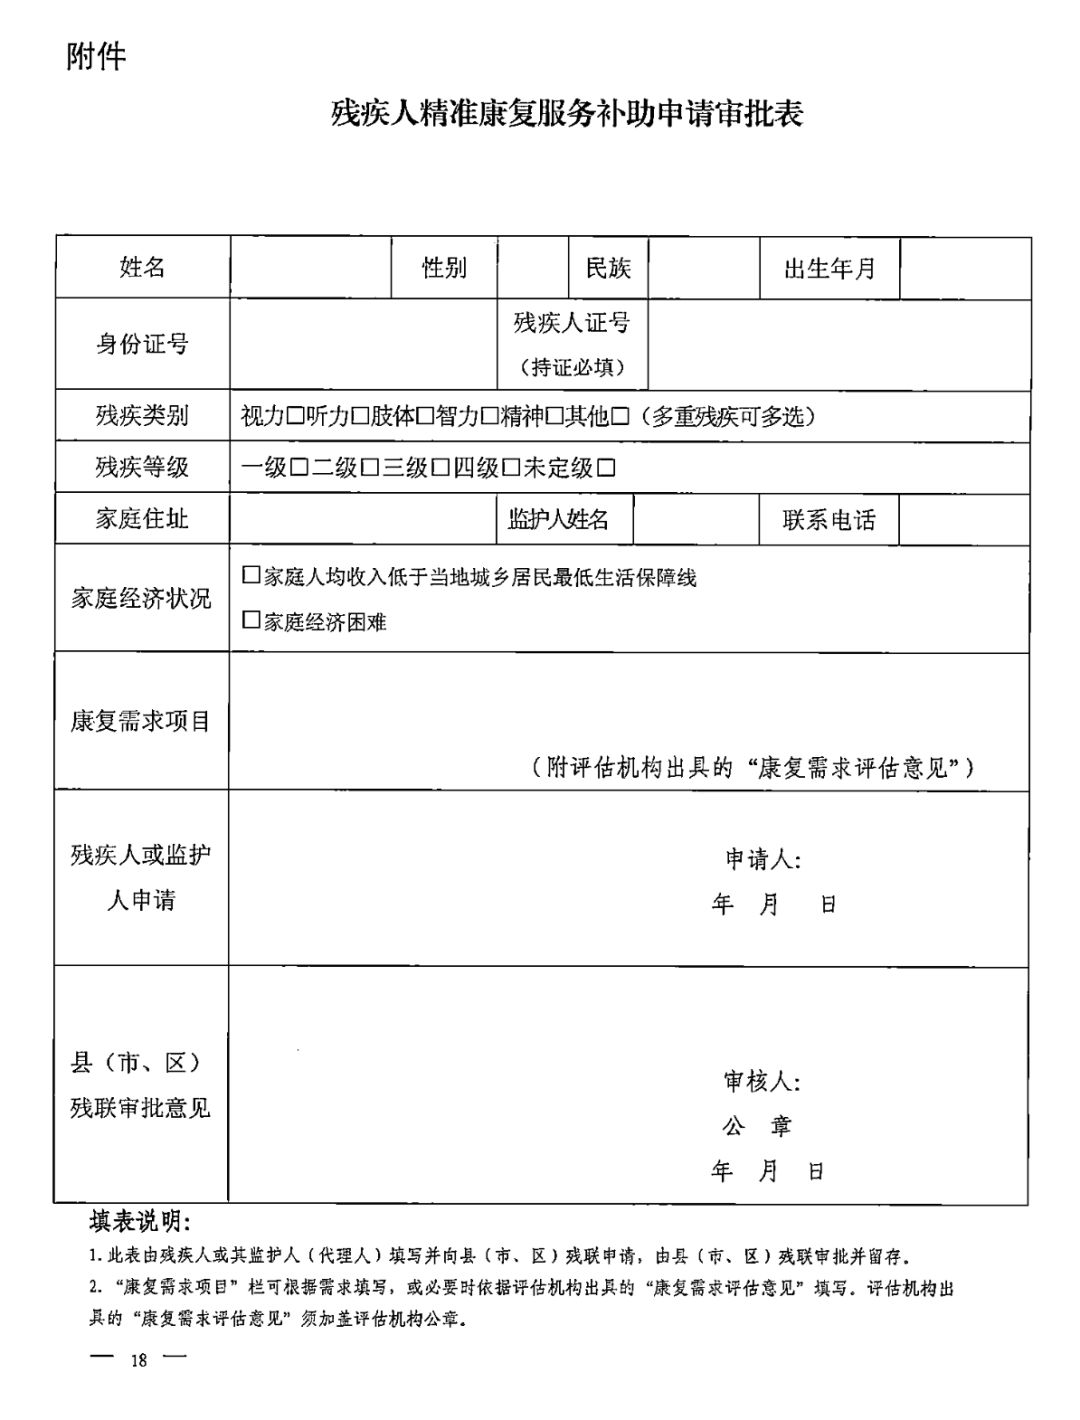 【救助制度】广东省残疾儿童康复救助实施办法